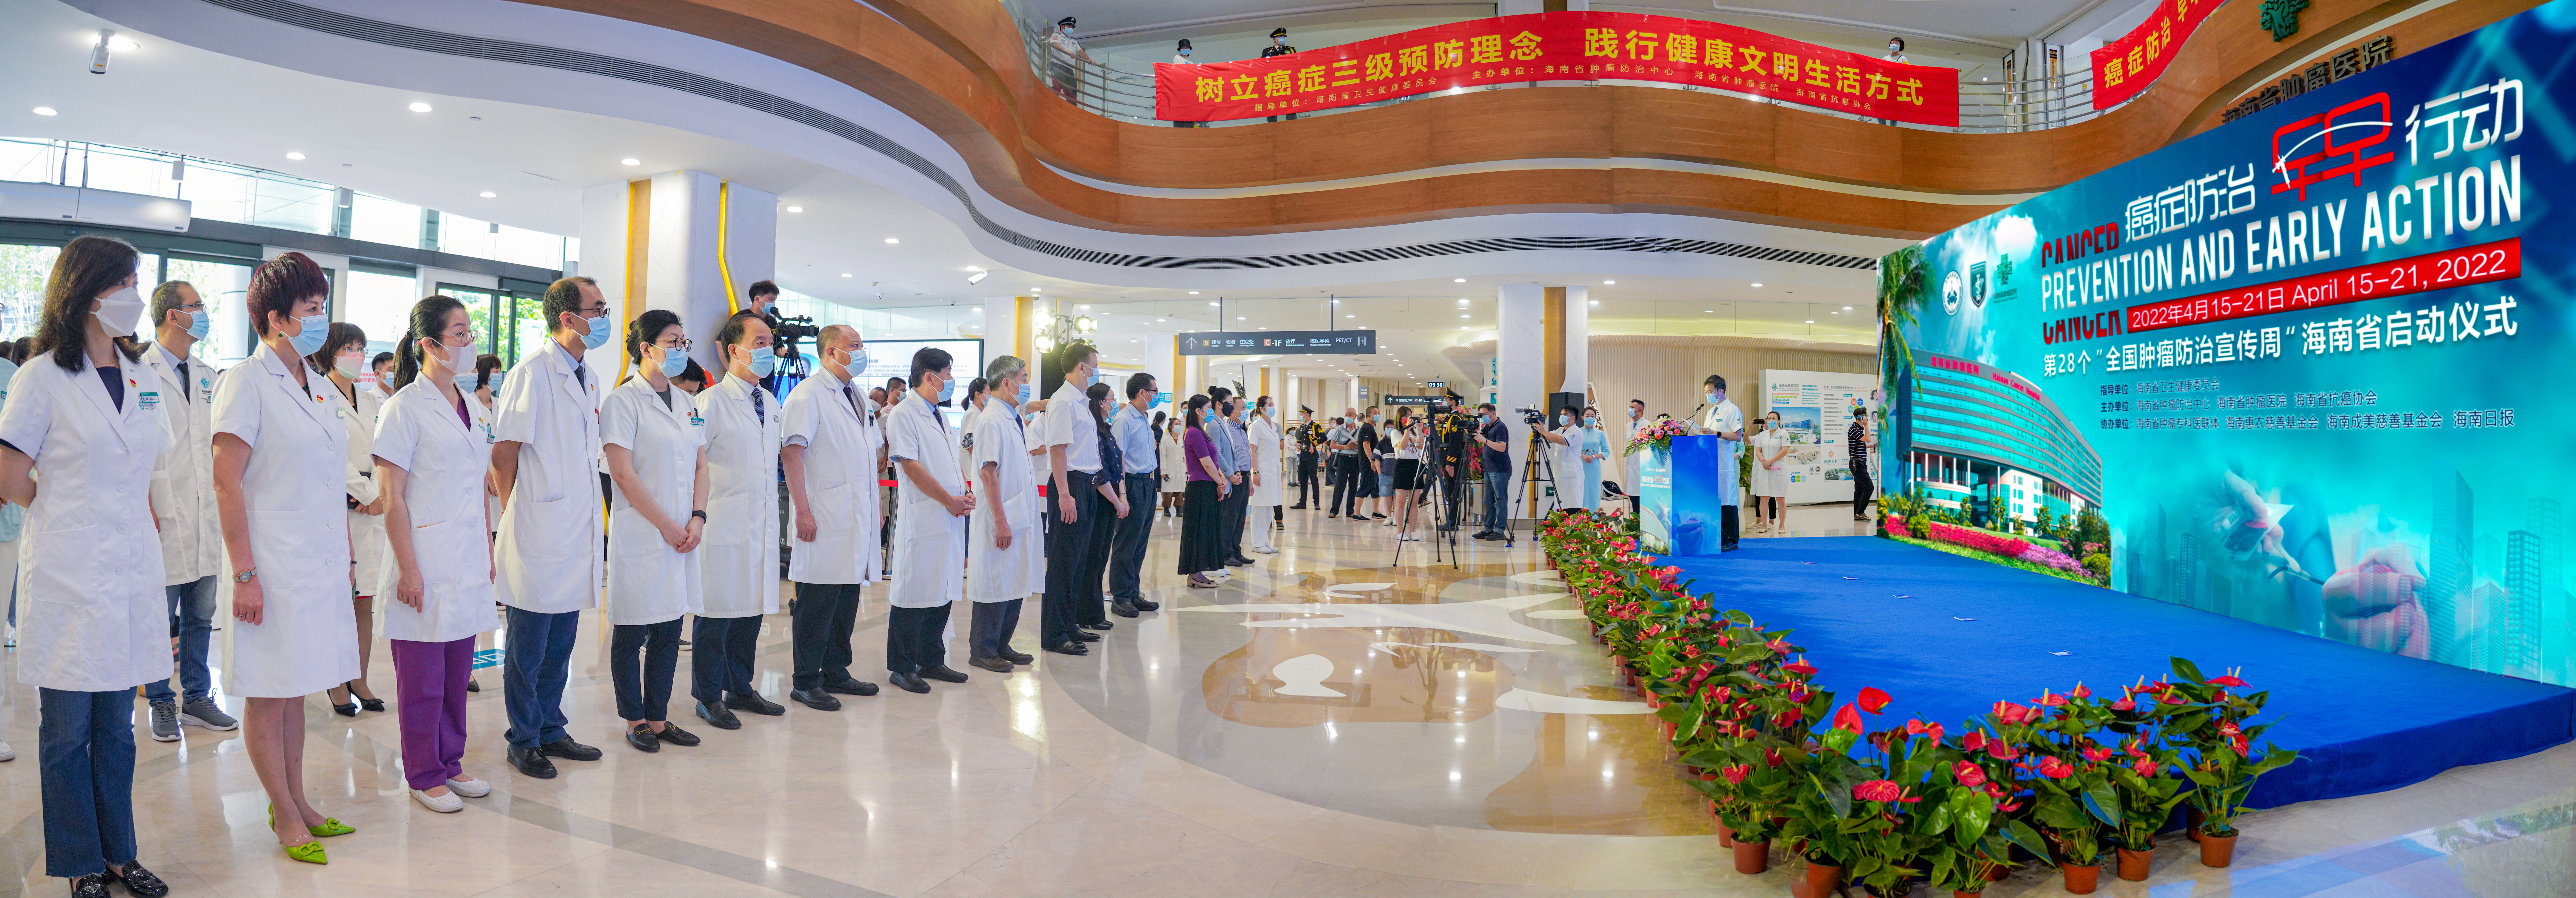 以高质量发展打造有温度的医疗  ——海南省肿瘤医院开院 7 周年综述